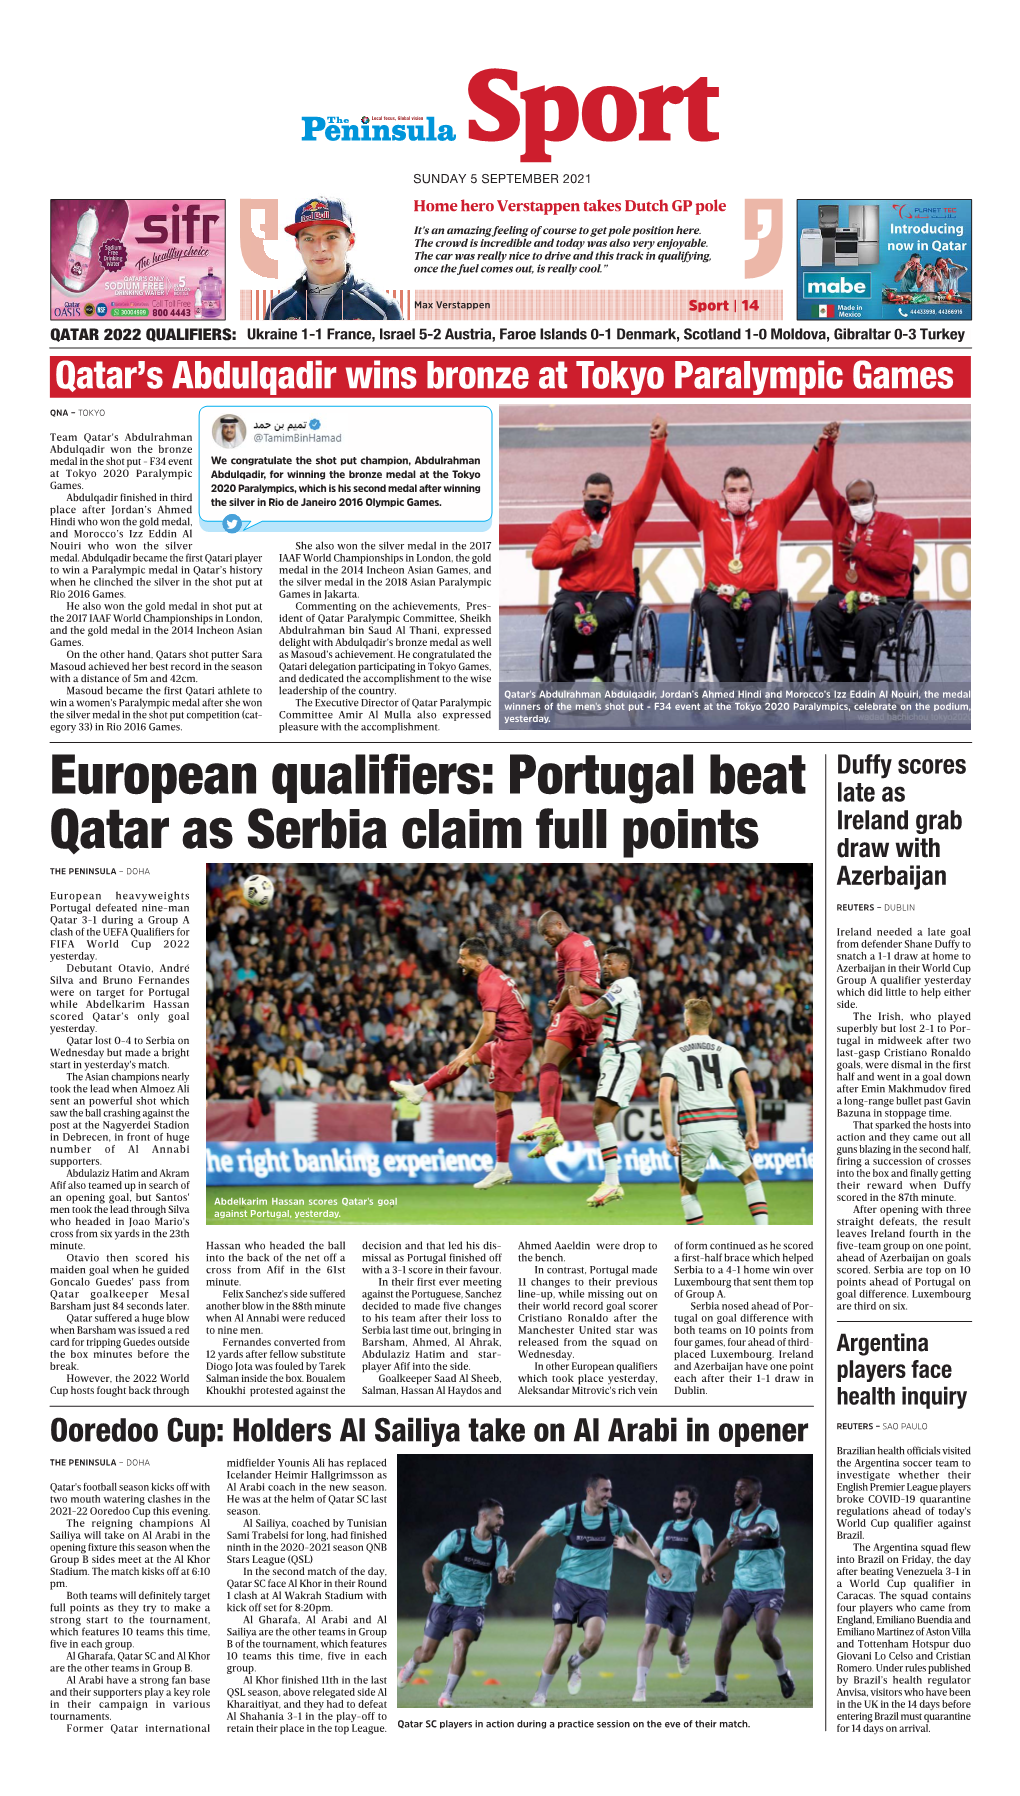 European Qualifiers: Portugal Beat Qatar As Serbia Claim Full Points